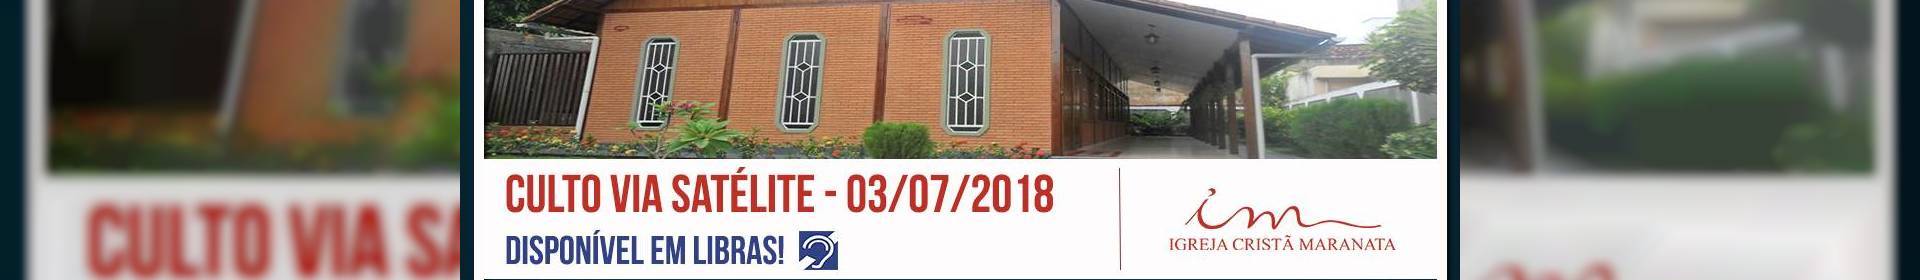 Culto via satélite da Igreja Cristã Maranata - 03/07/2018